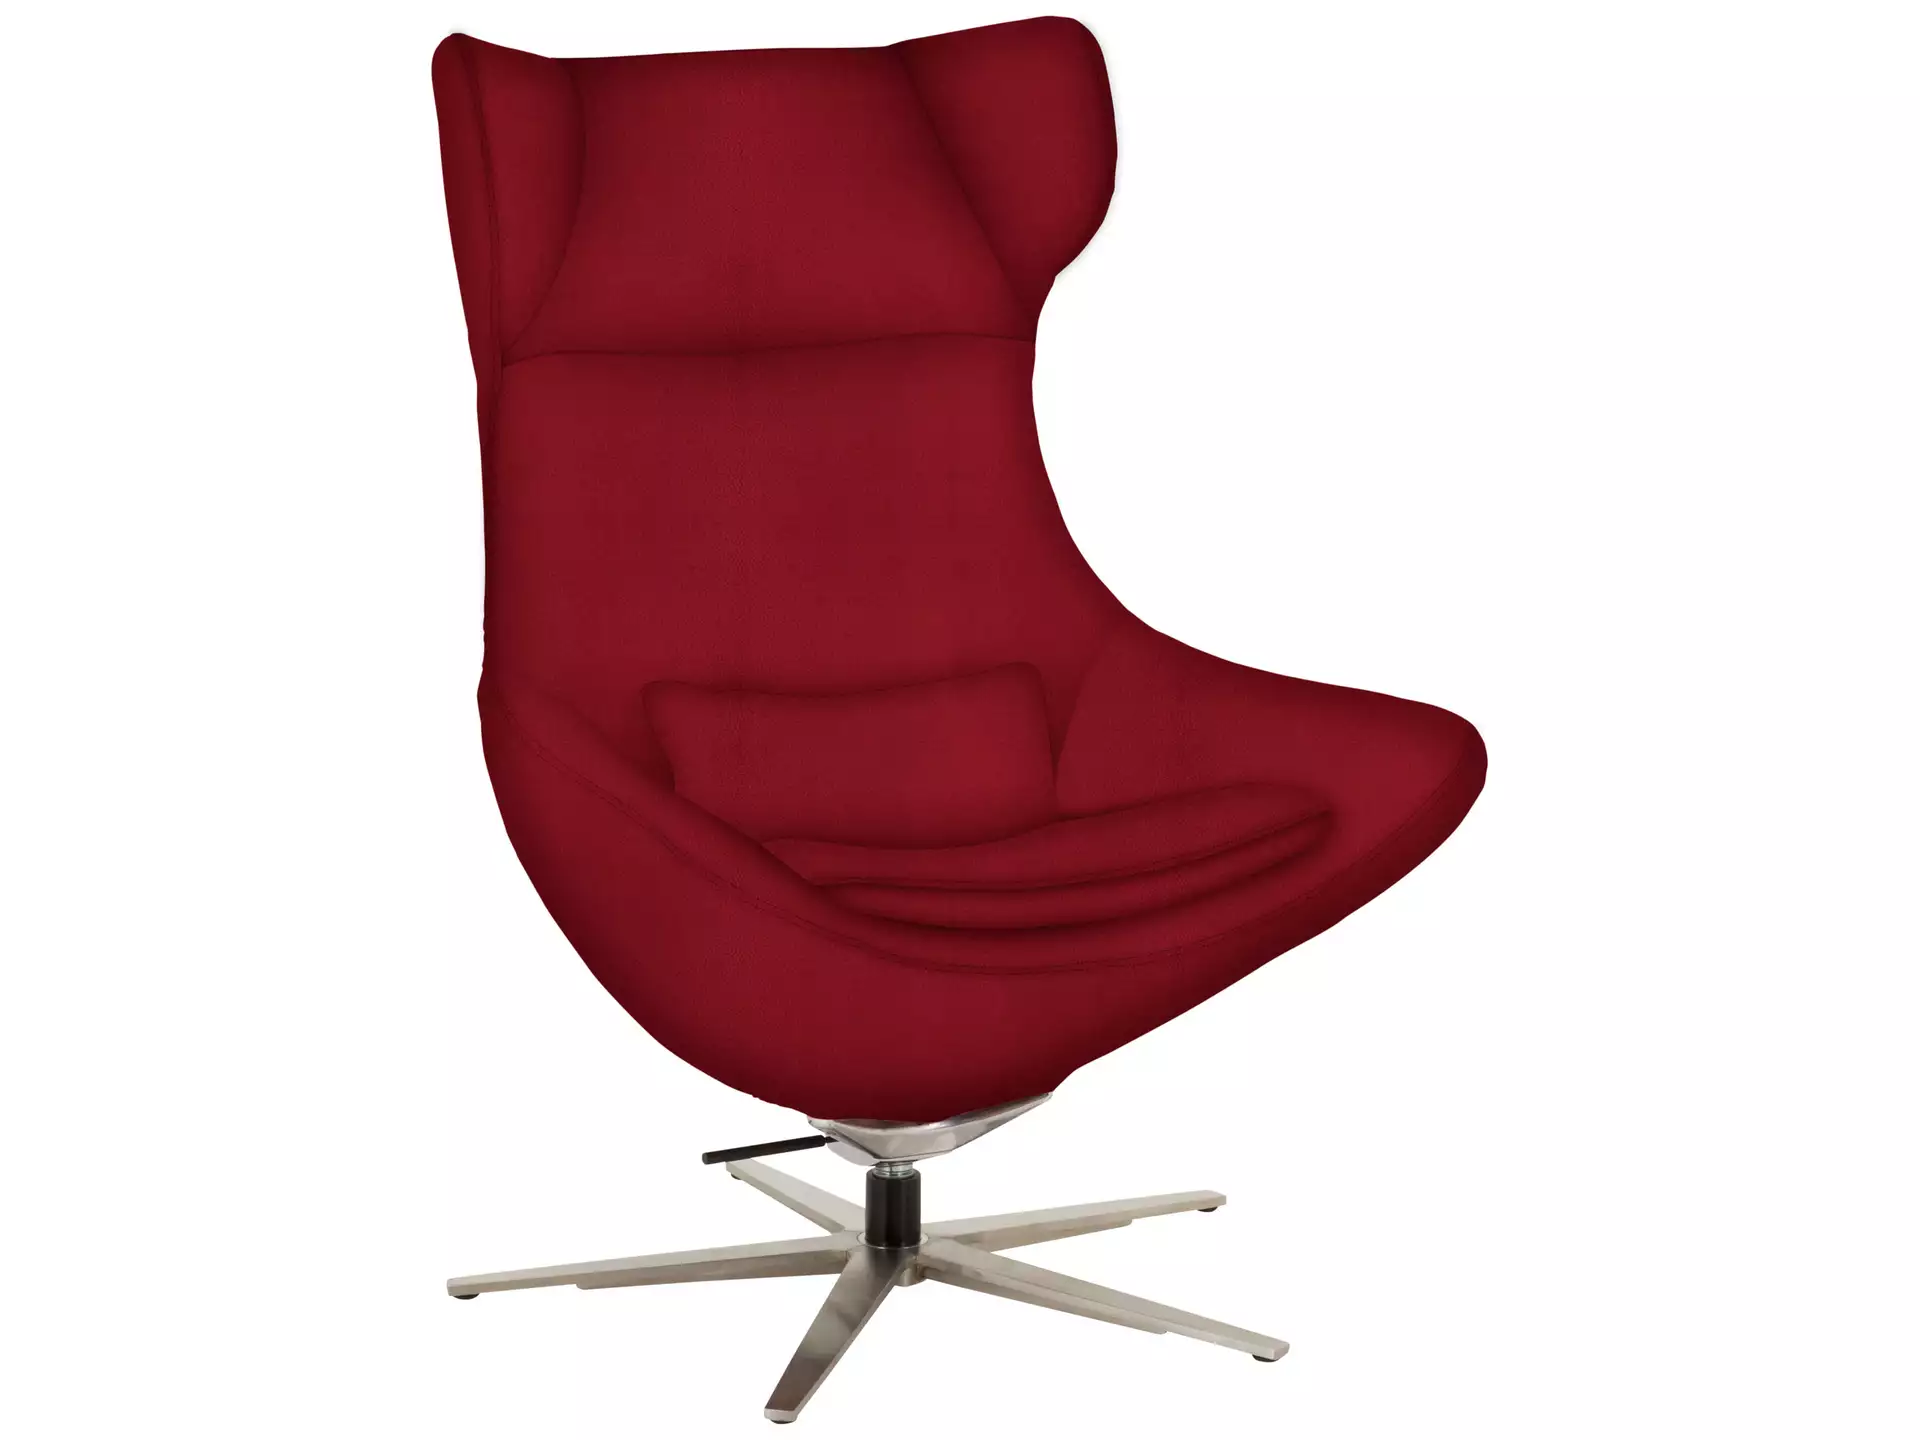 Relaxer Capri Basic Polipol / Farbe: Rosso / Material: Leder Basic